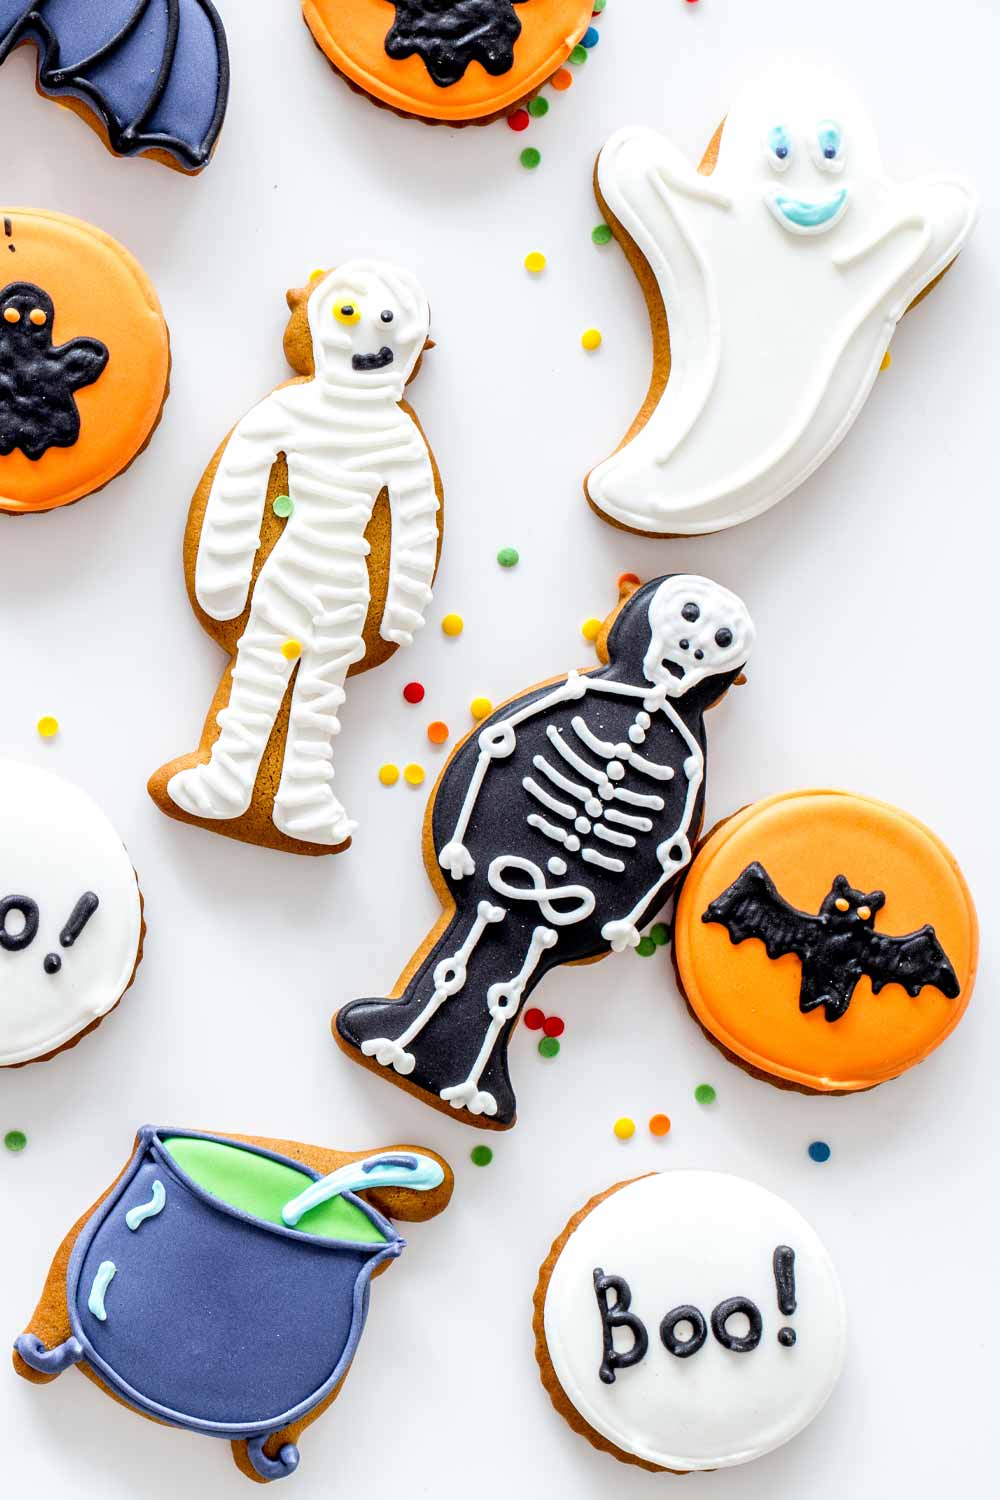 Cookies Decor for Halloween